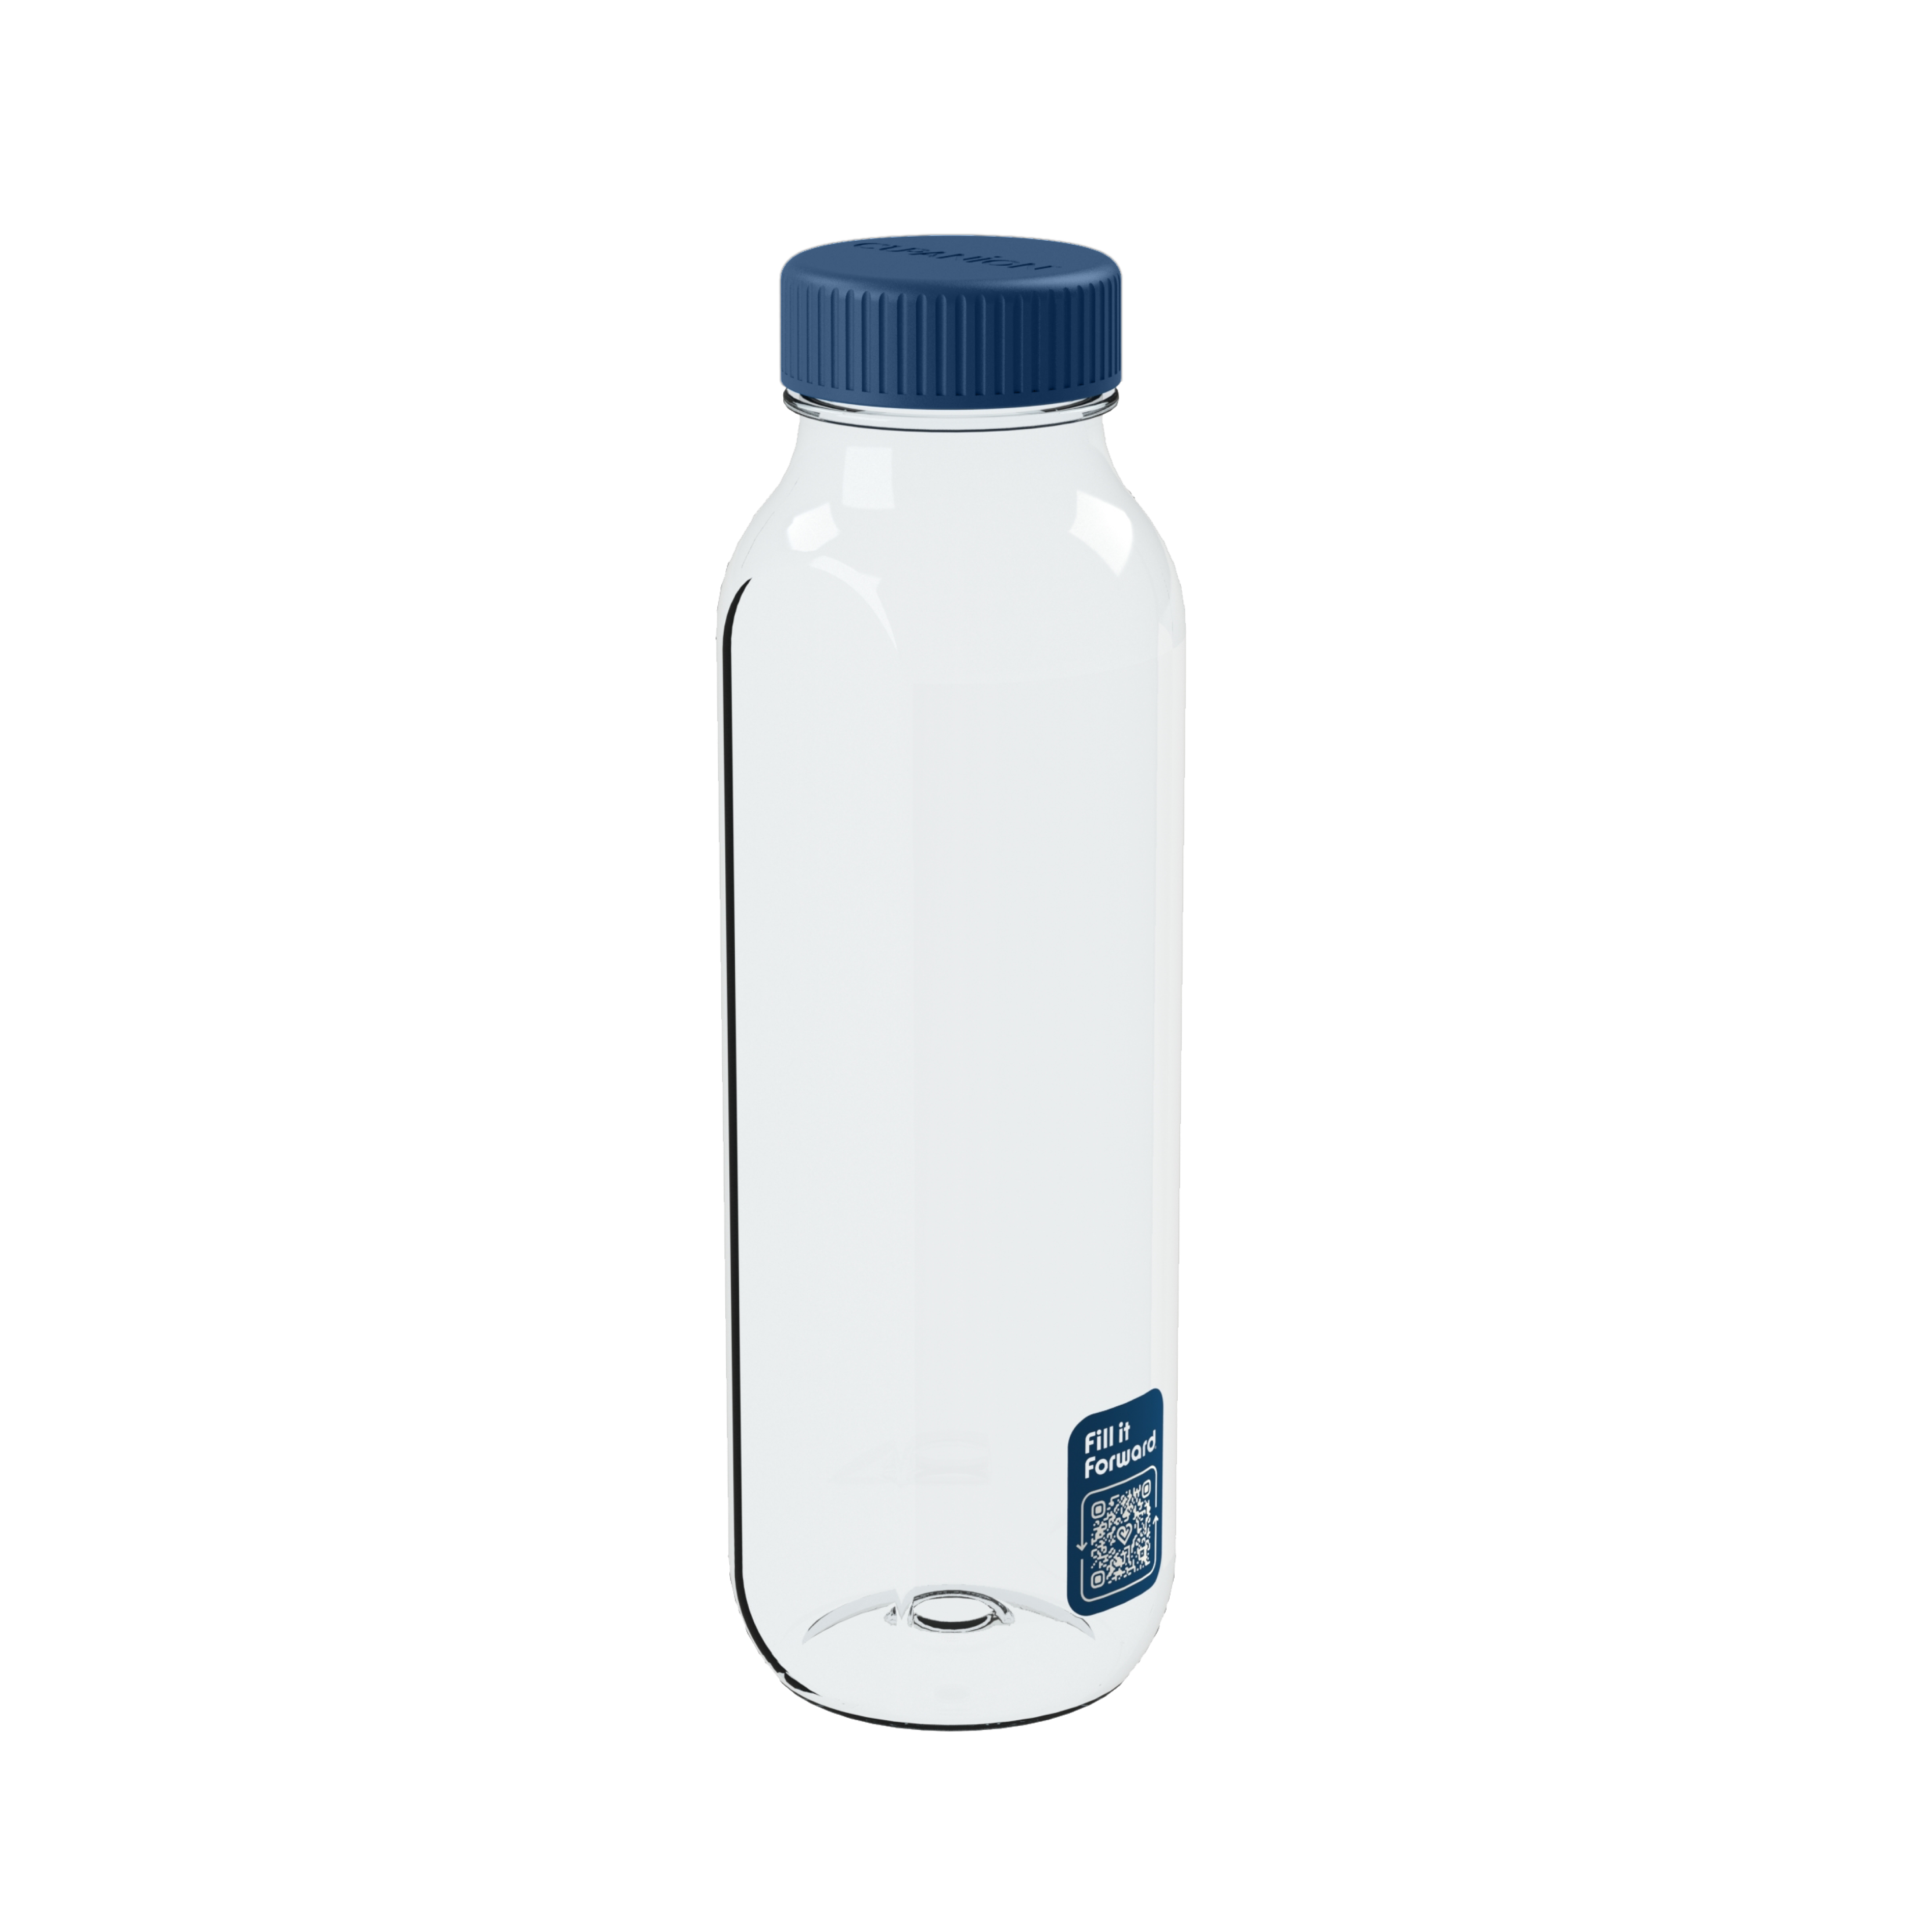 The Cupanion Bottle - Fill it Forward